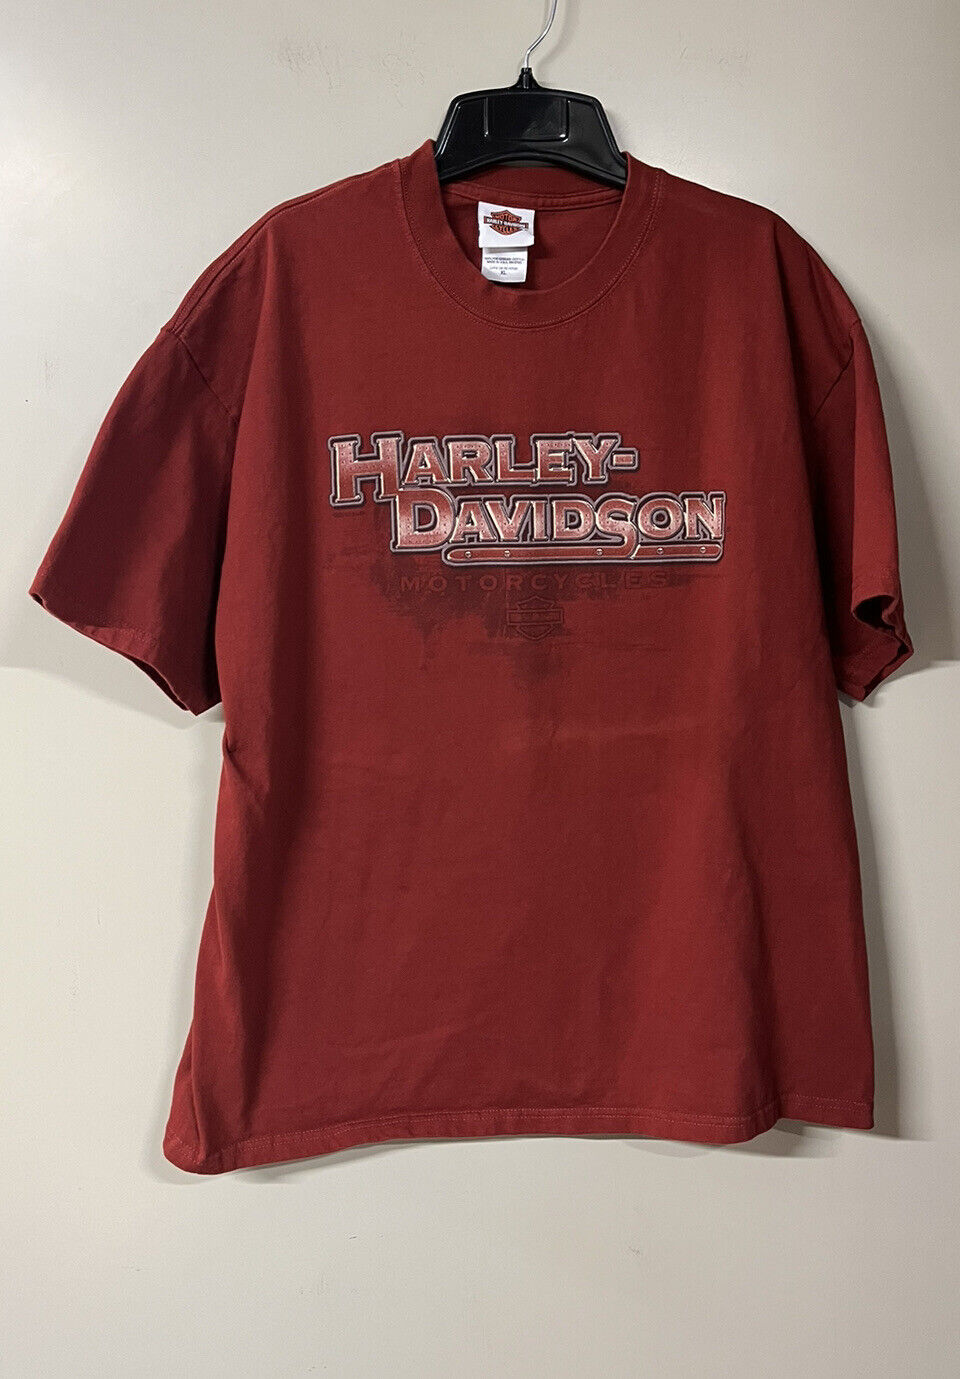 Harley-Davidson T-Shirt XL Red Zurich Switzerland H-D